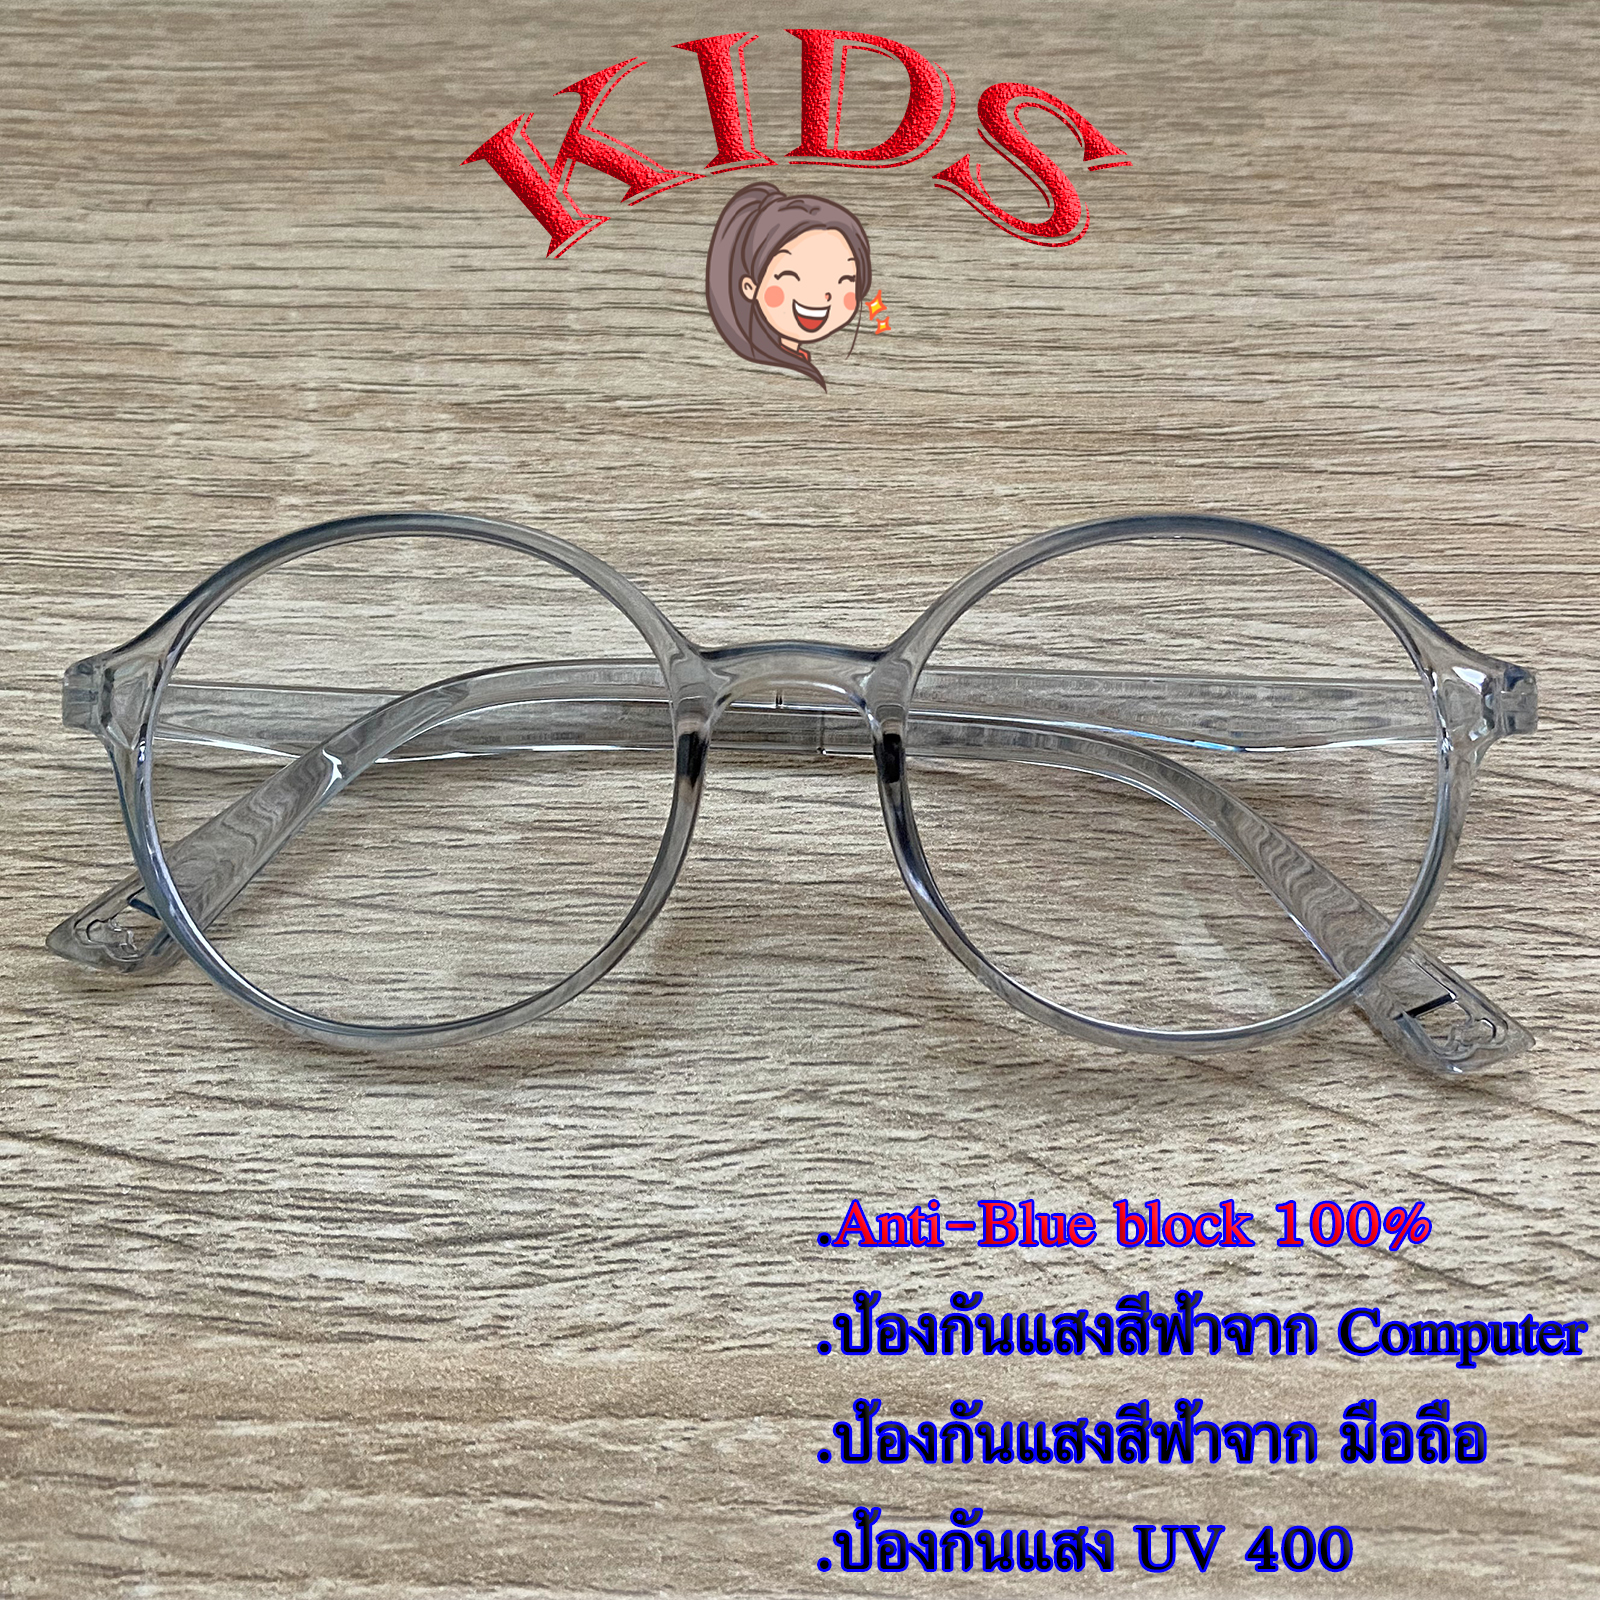 Blue Block แว่นตาเด็ก กรองแสงสีฟ้า กรองแสงคอม รุ่น 2806 สีเทา พลาสติก พีซี เกรด เอ ขาข้อต่อ กรองแสงสูงสุด95% กัน UV 100% Glasses